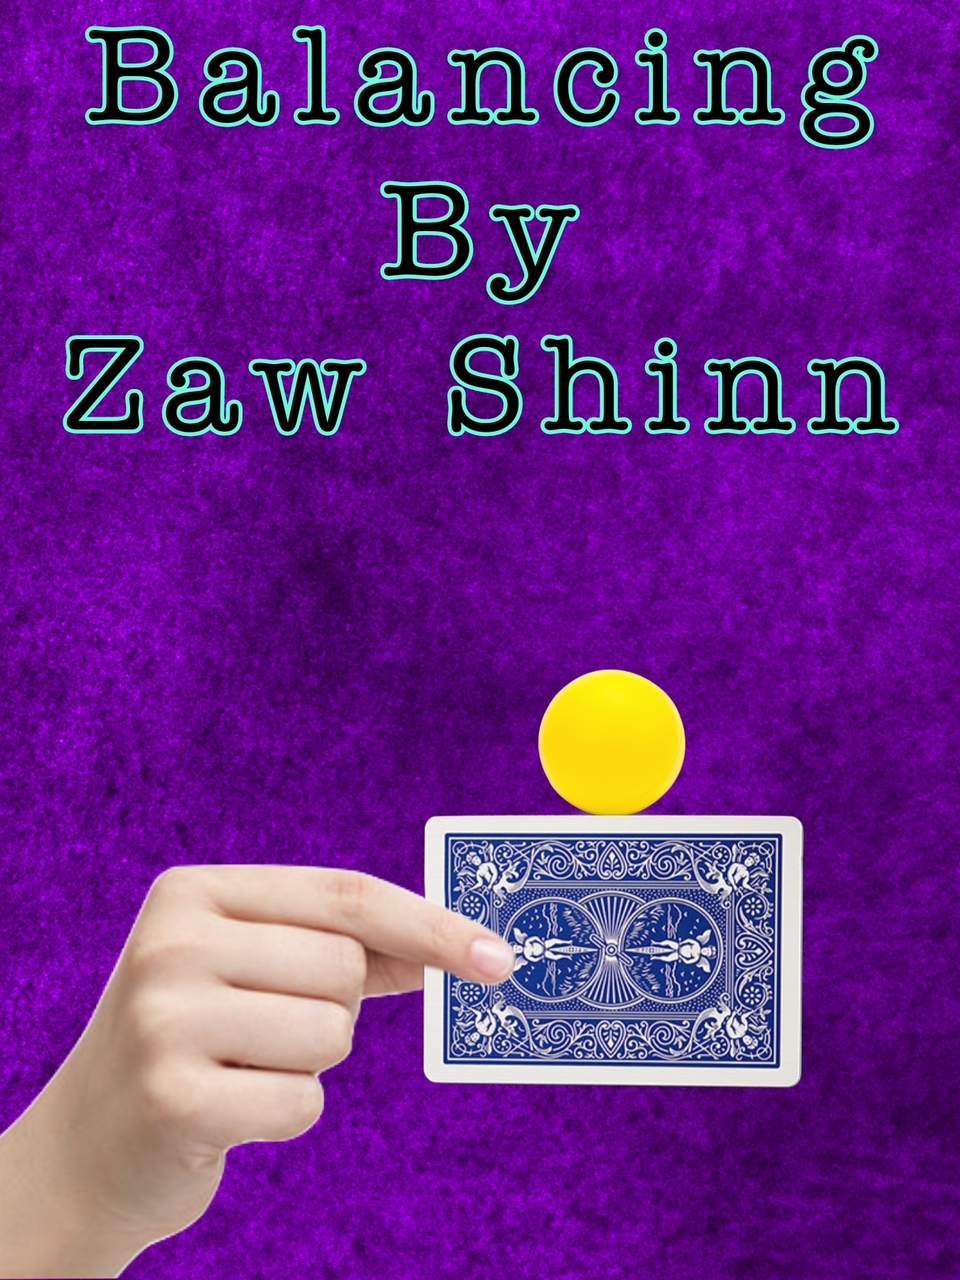 Zaw Shinn - Balancing